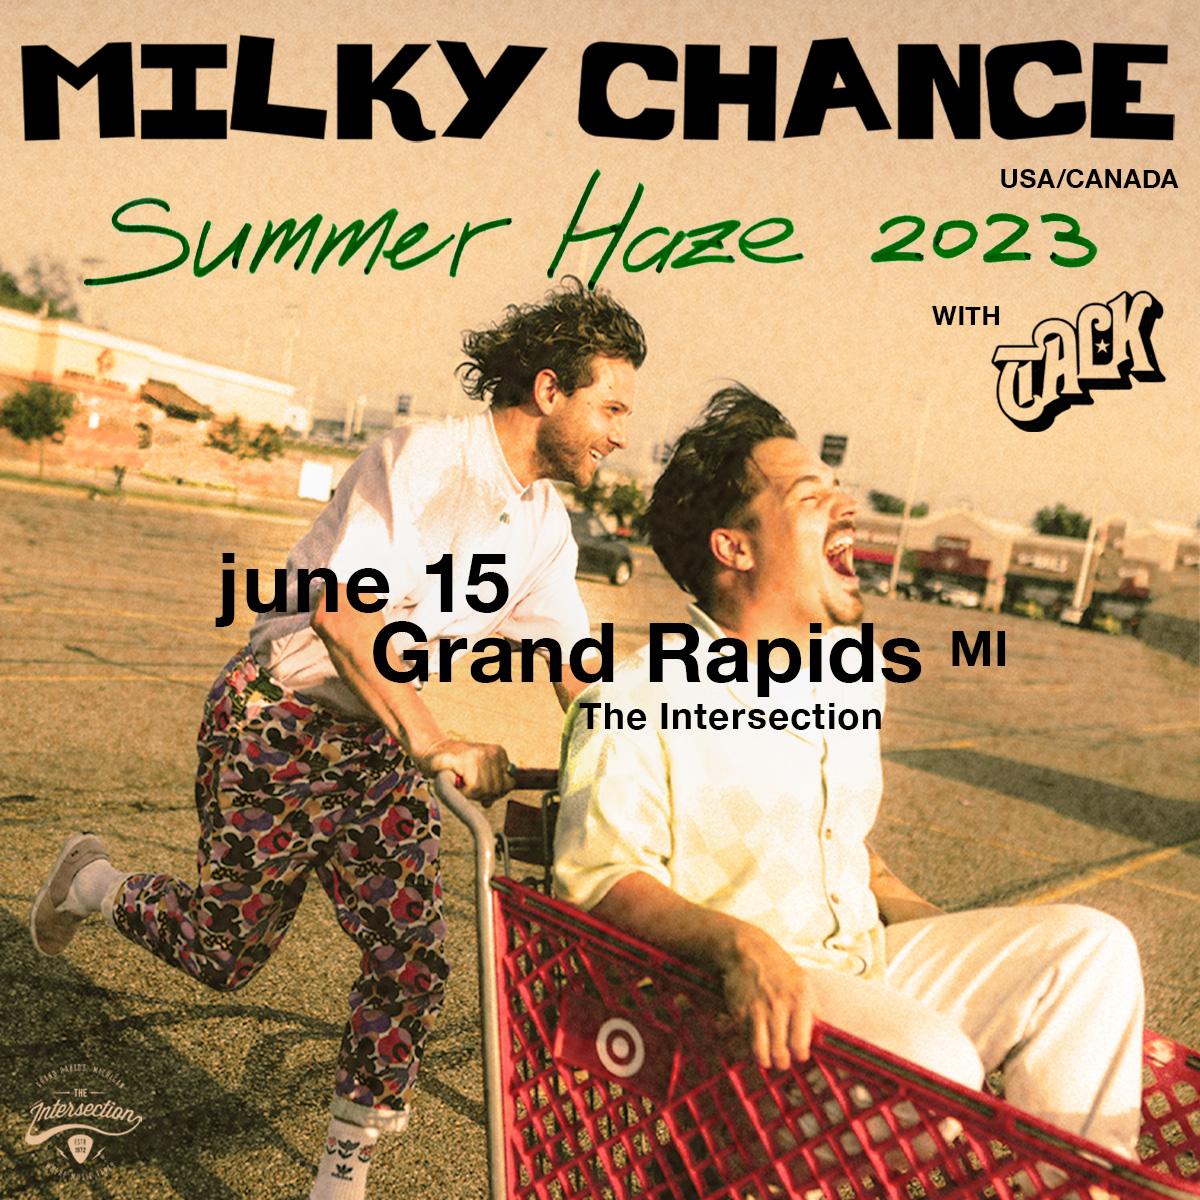 milky chance tour 2023 deutschland